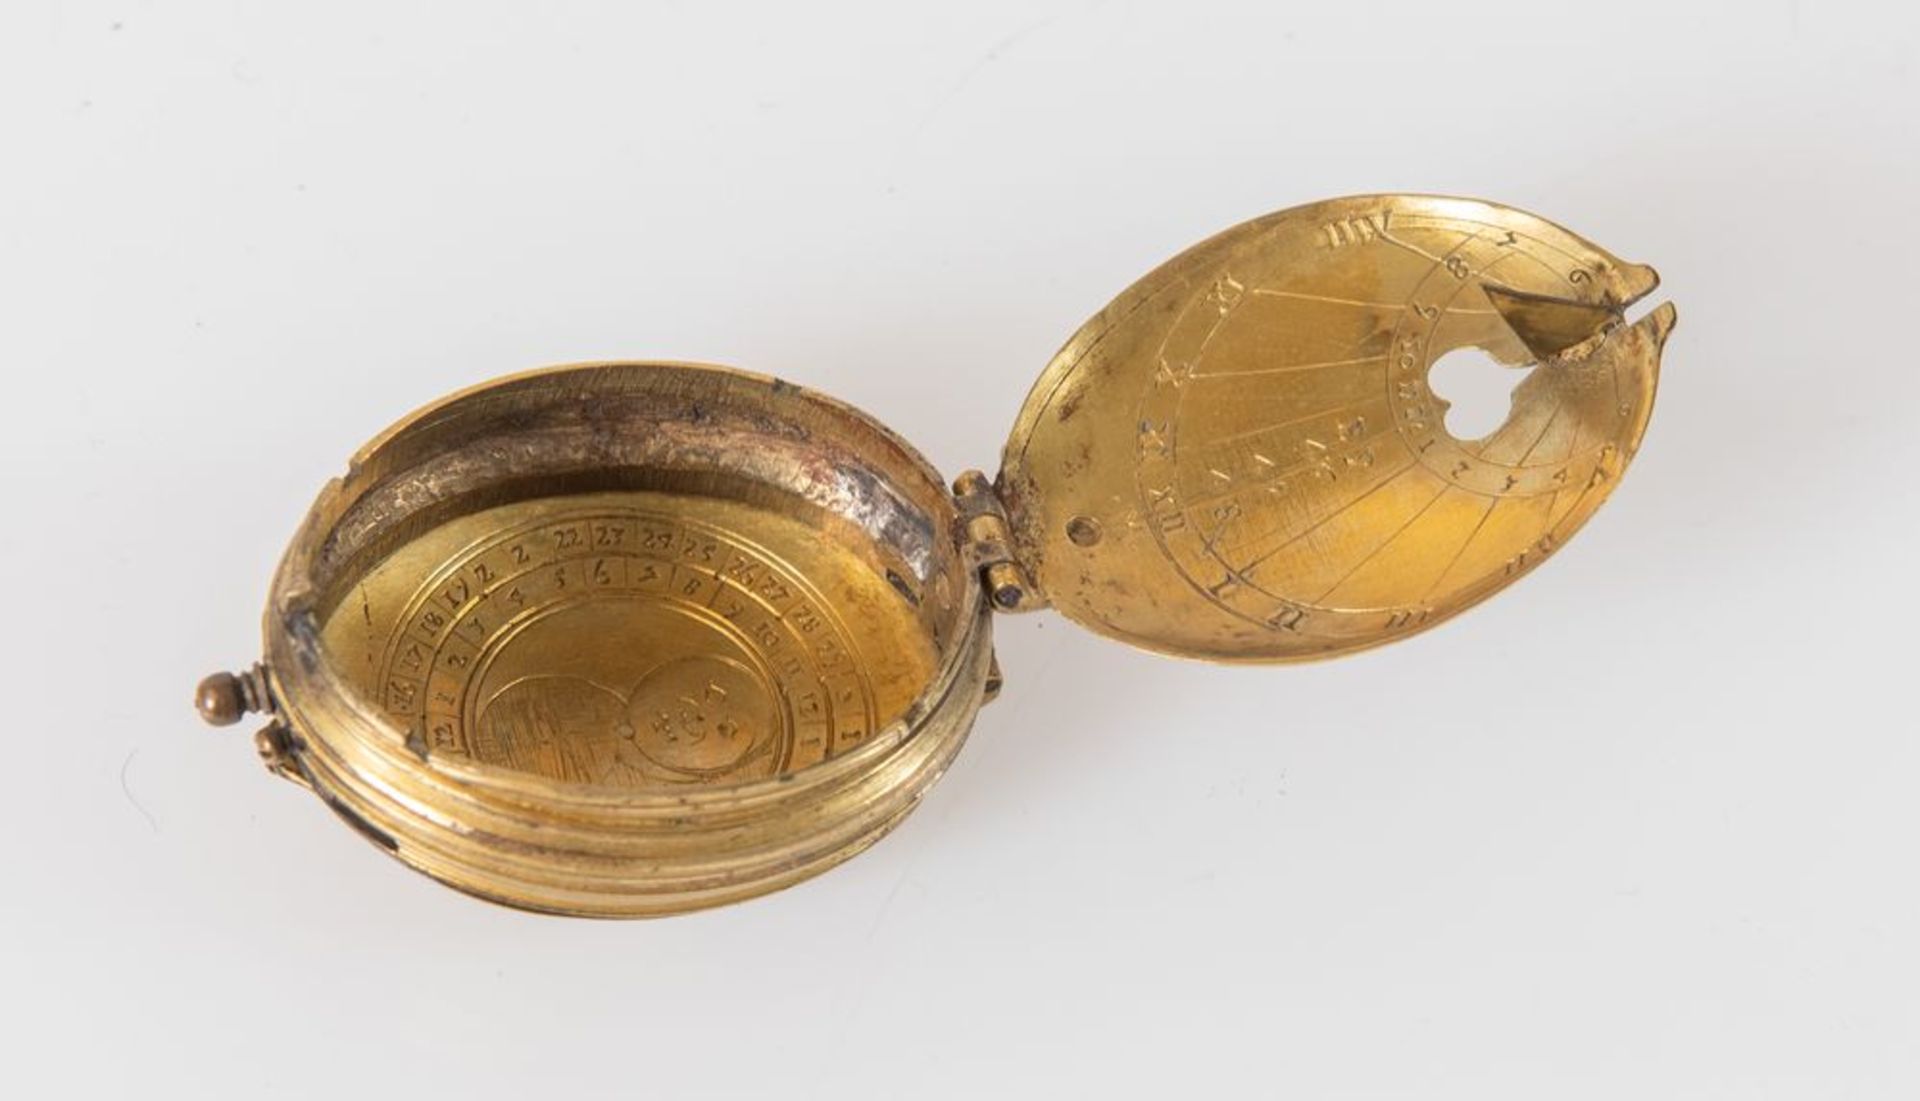 Pendaglio da collo/orologio solare in bronzo dorato. XVIII secolo. Cm 6x4. - Bild 2 aus 3